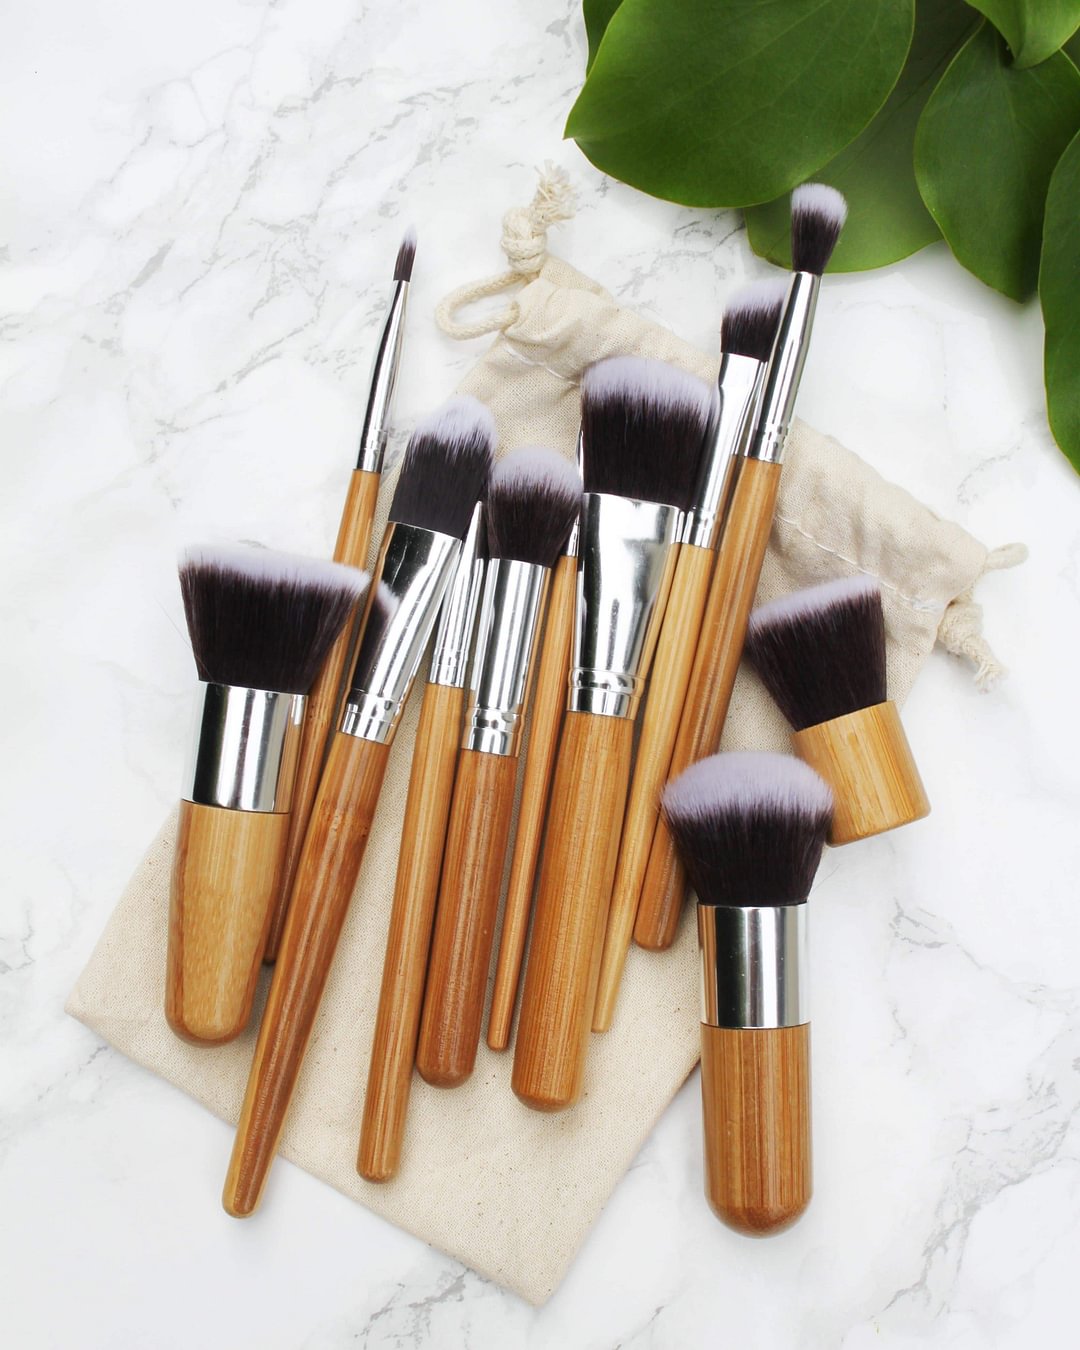 The Bamboo Professional 11pcs Makeup Brush Set